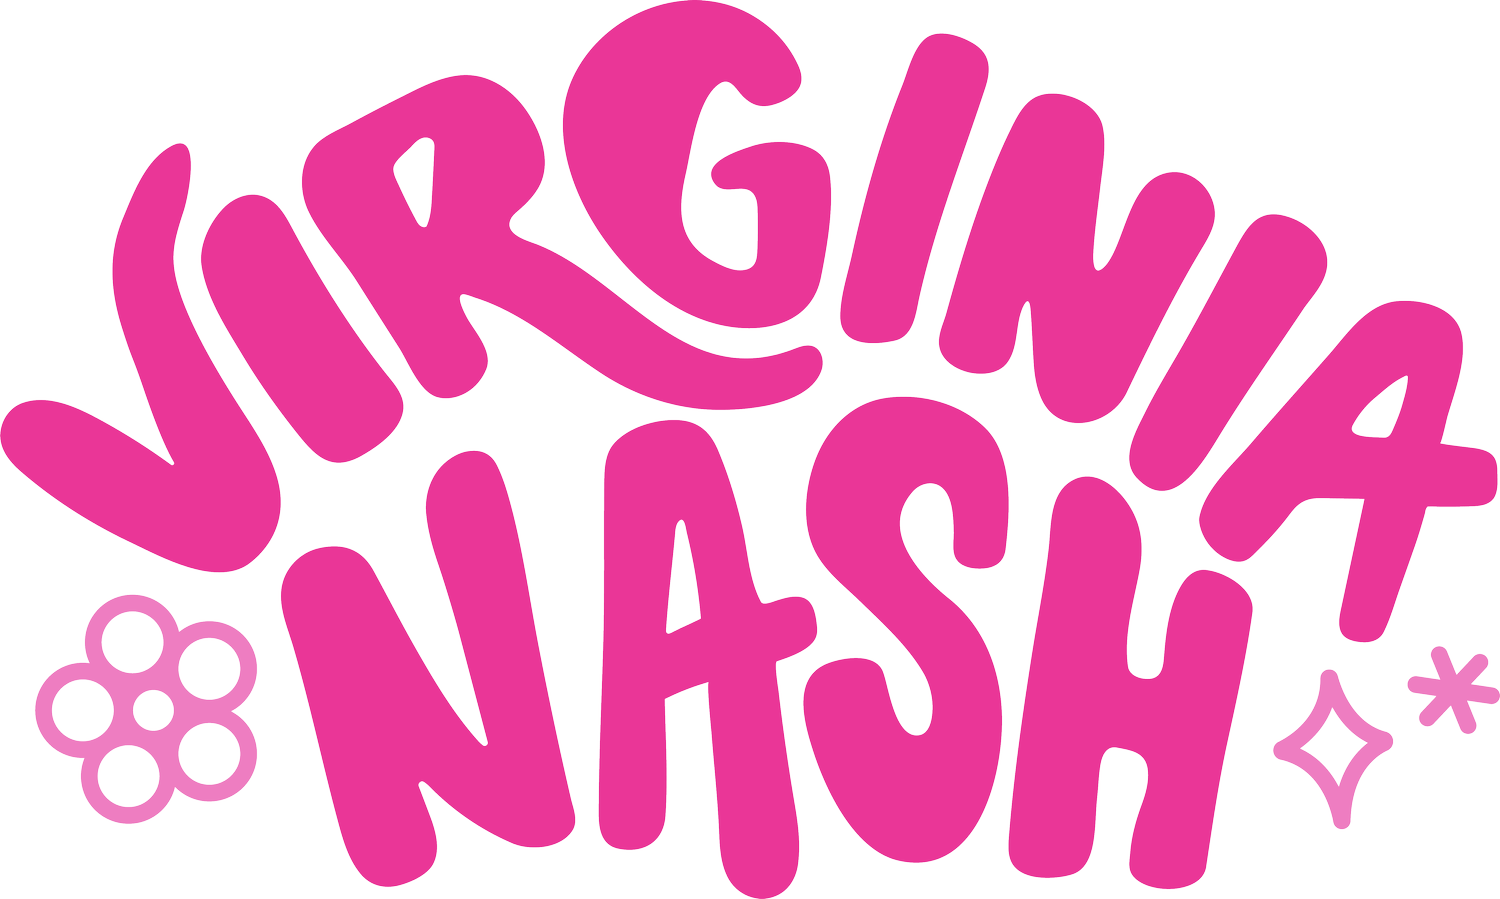 Virginia Nash